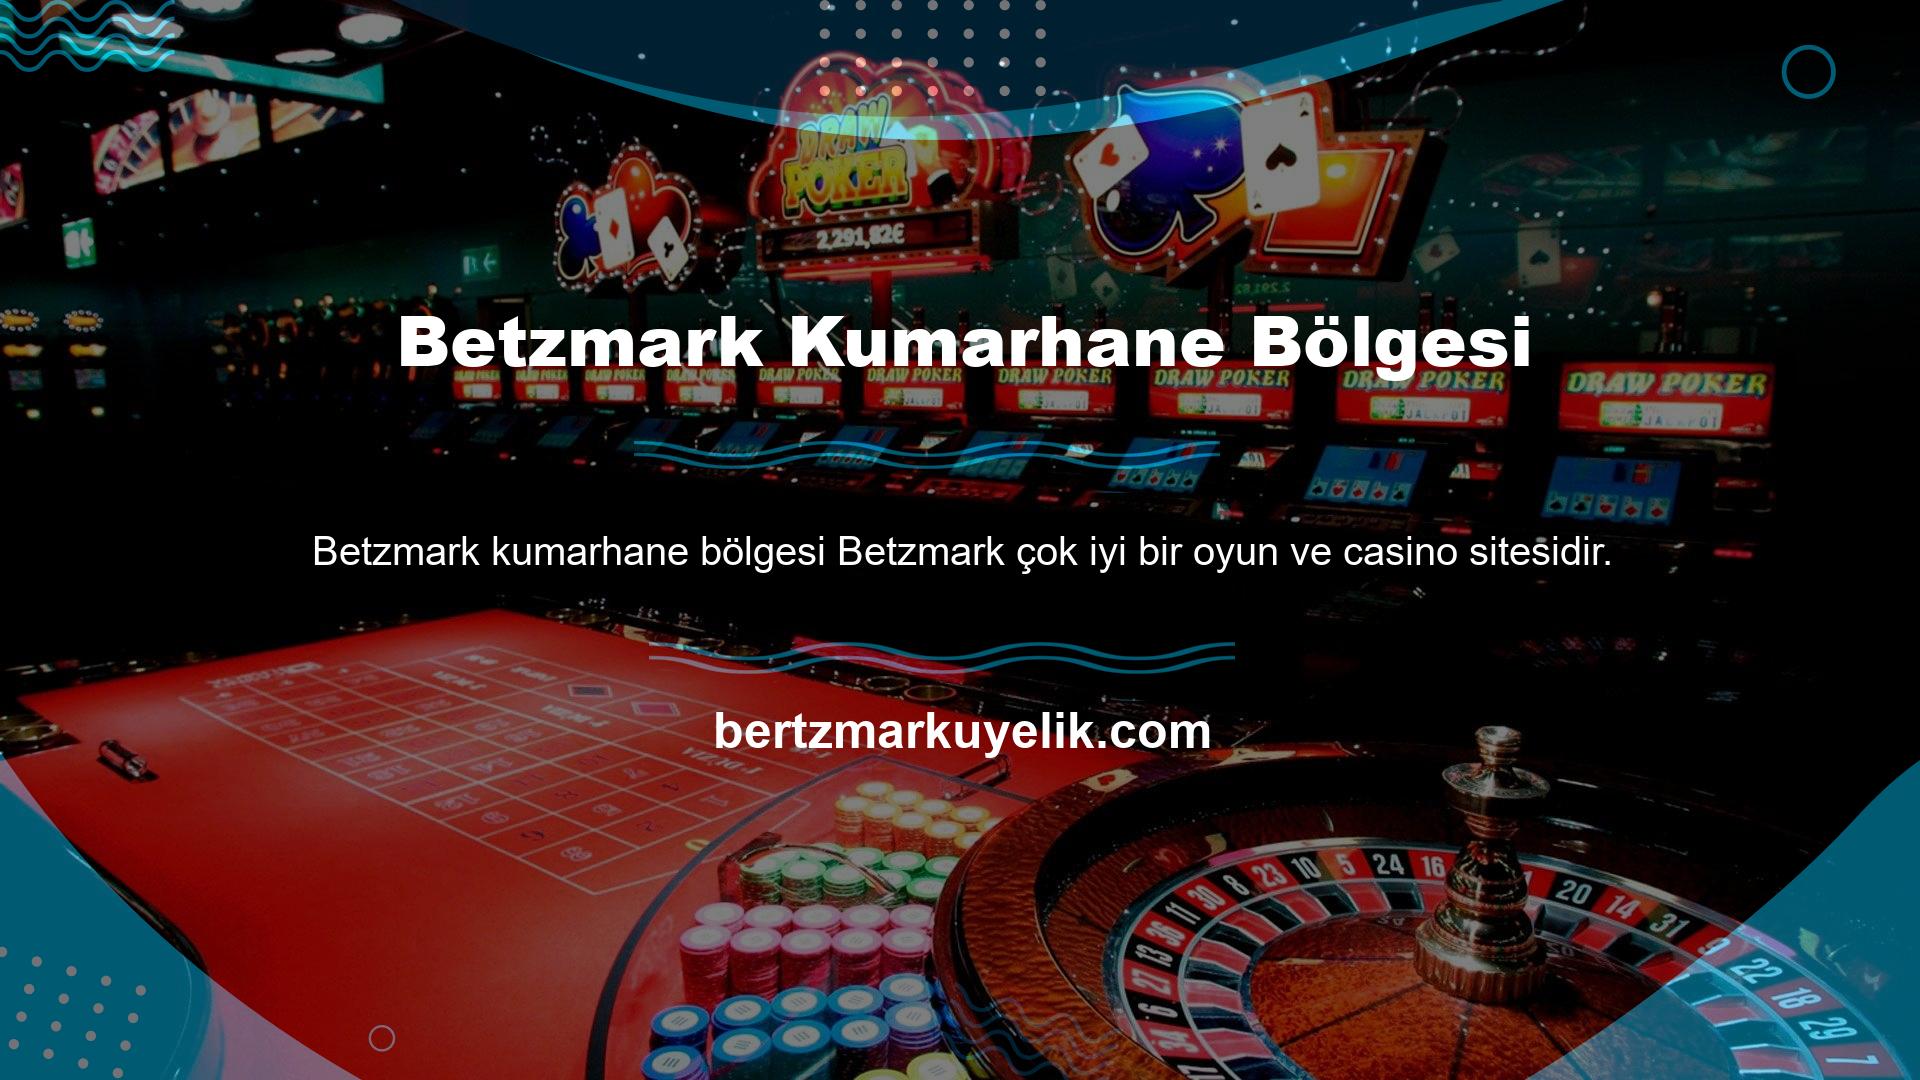 Betzmark web sitesi, çoğu ülkede çevrimiçi oyun pazarına aktif olarak hizmet vermektedir